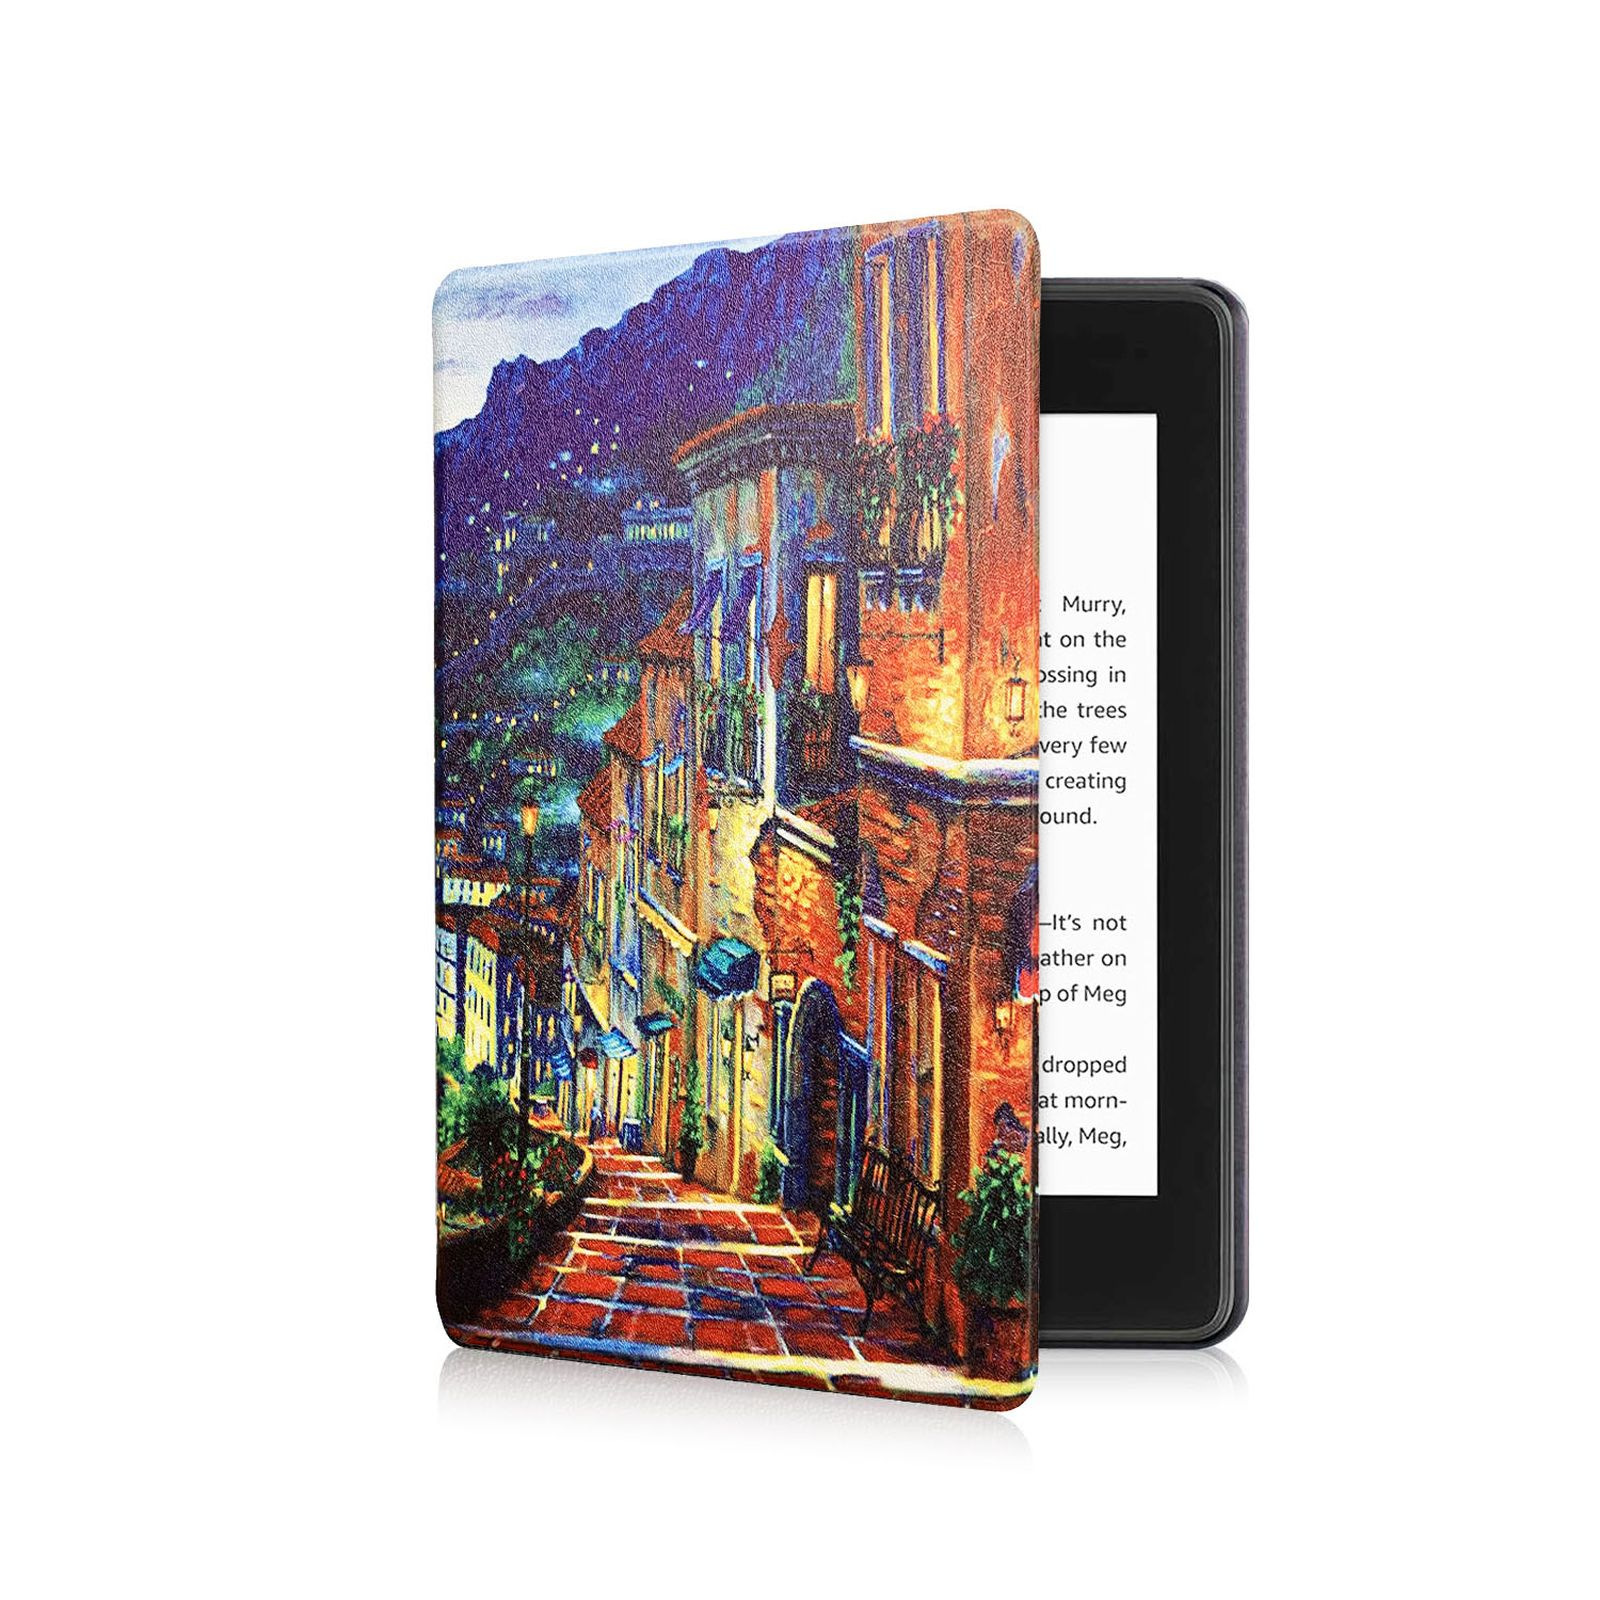 Bookcover Amazon Kunstleder, Schutzhülle 6.8 Mehrfarbig Generation 2021 für LOBWERK Hülle Kindle Paperwhite 11. Zoll